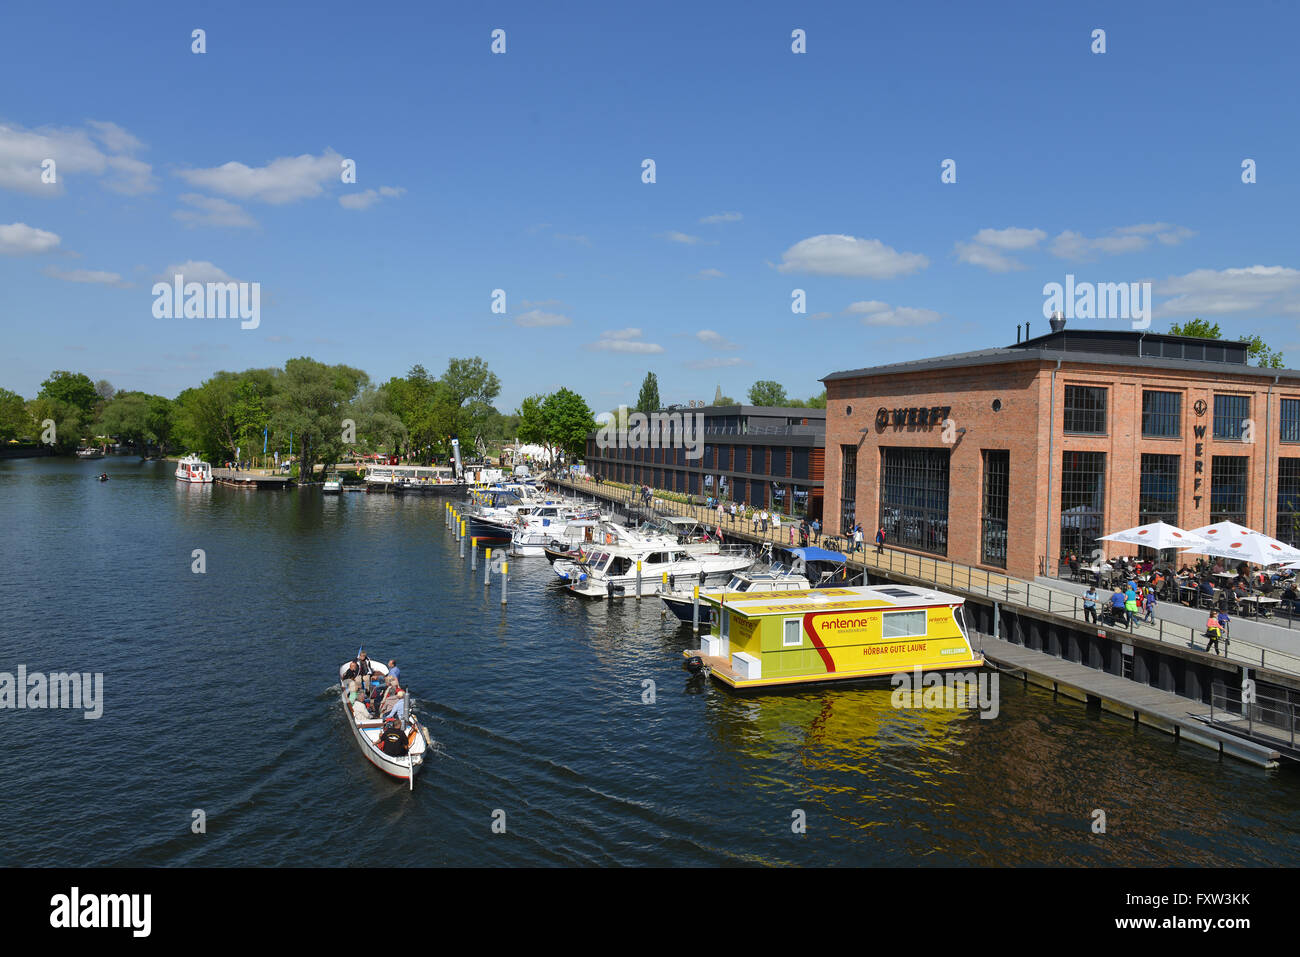 Schiffsanleger, Havel, Wiemannwerft, Brandenburg an der Havel, Brandenburg, Deutschland Stockfoto